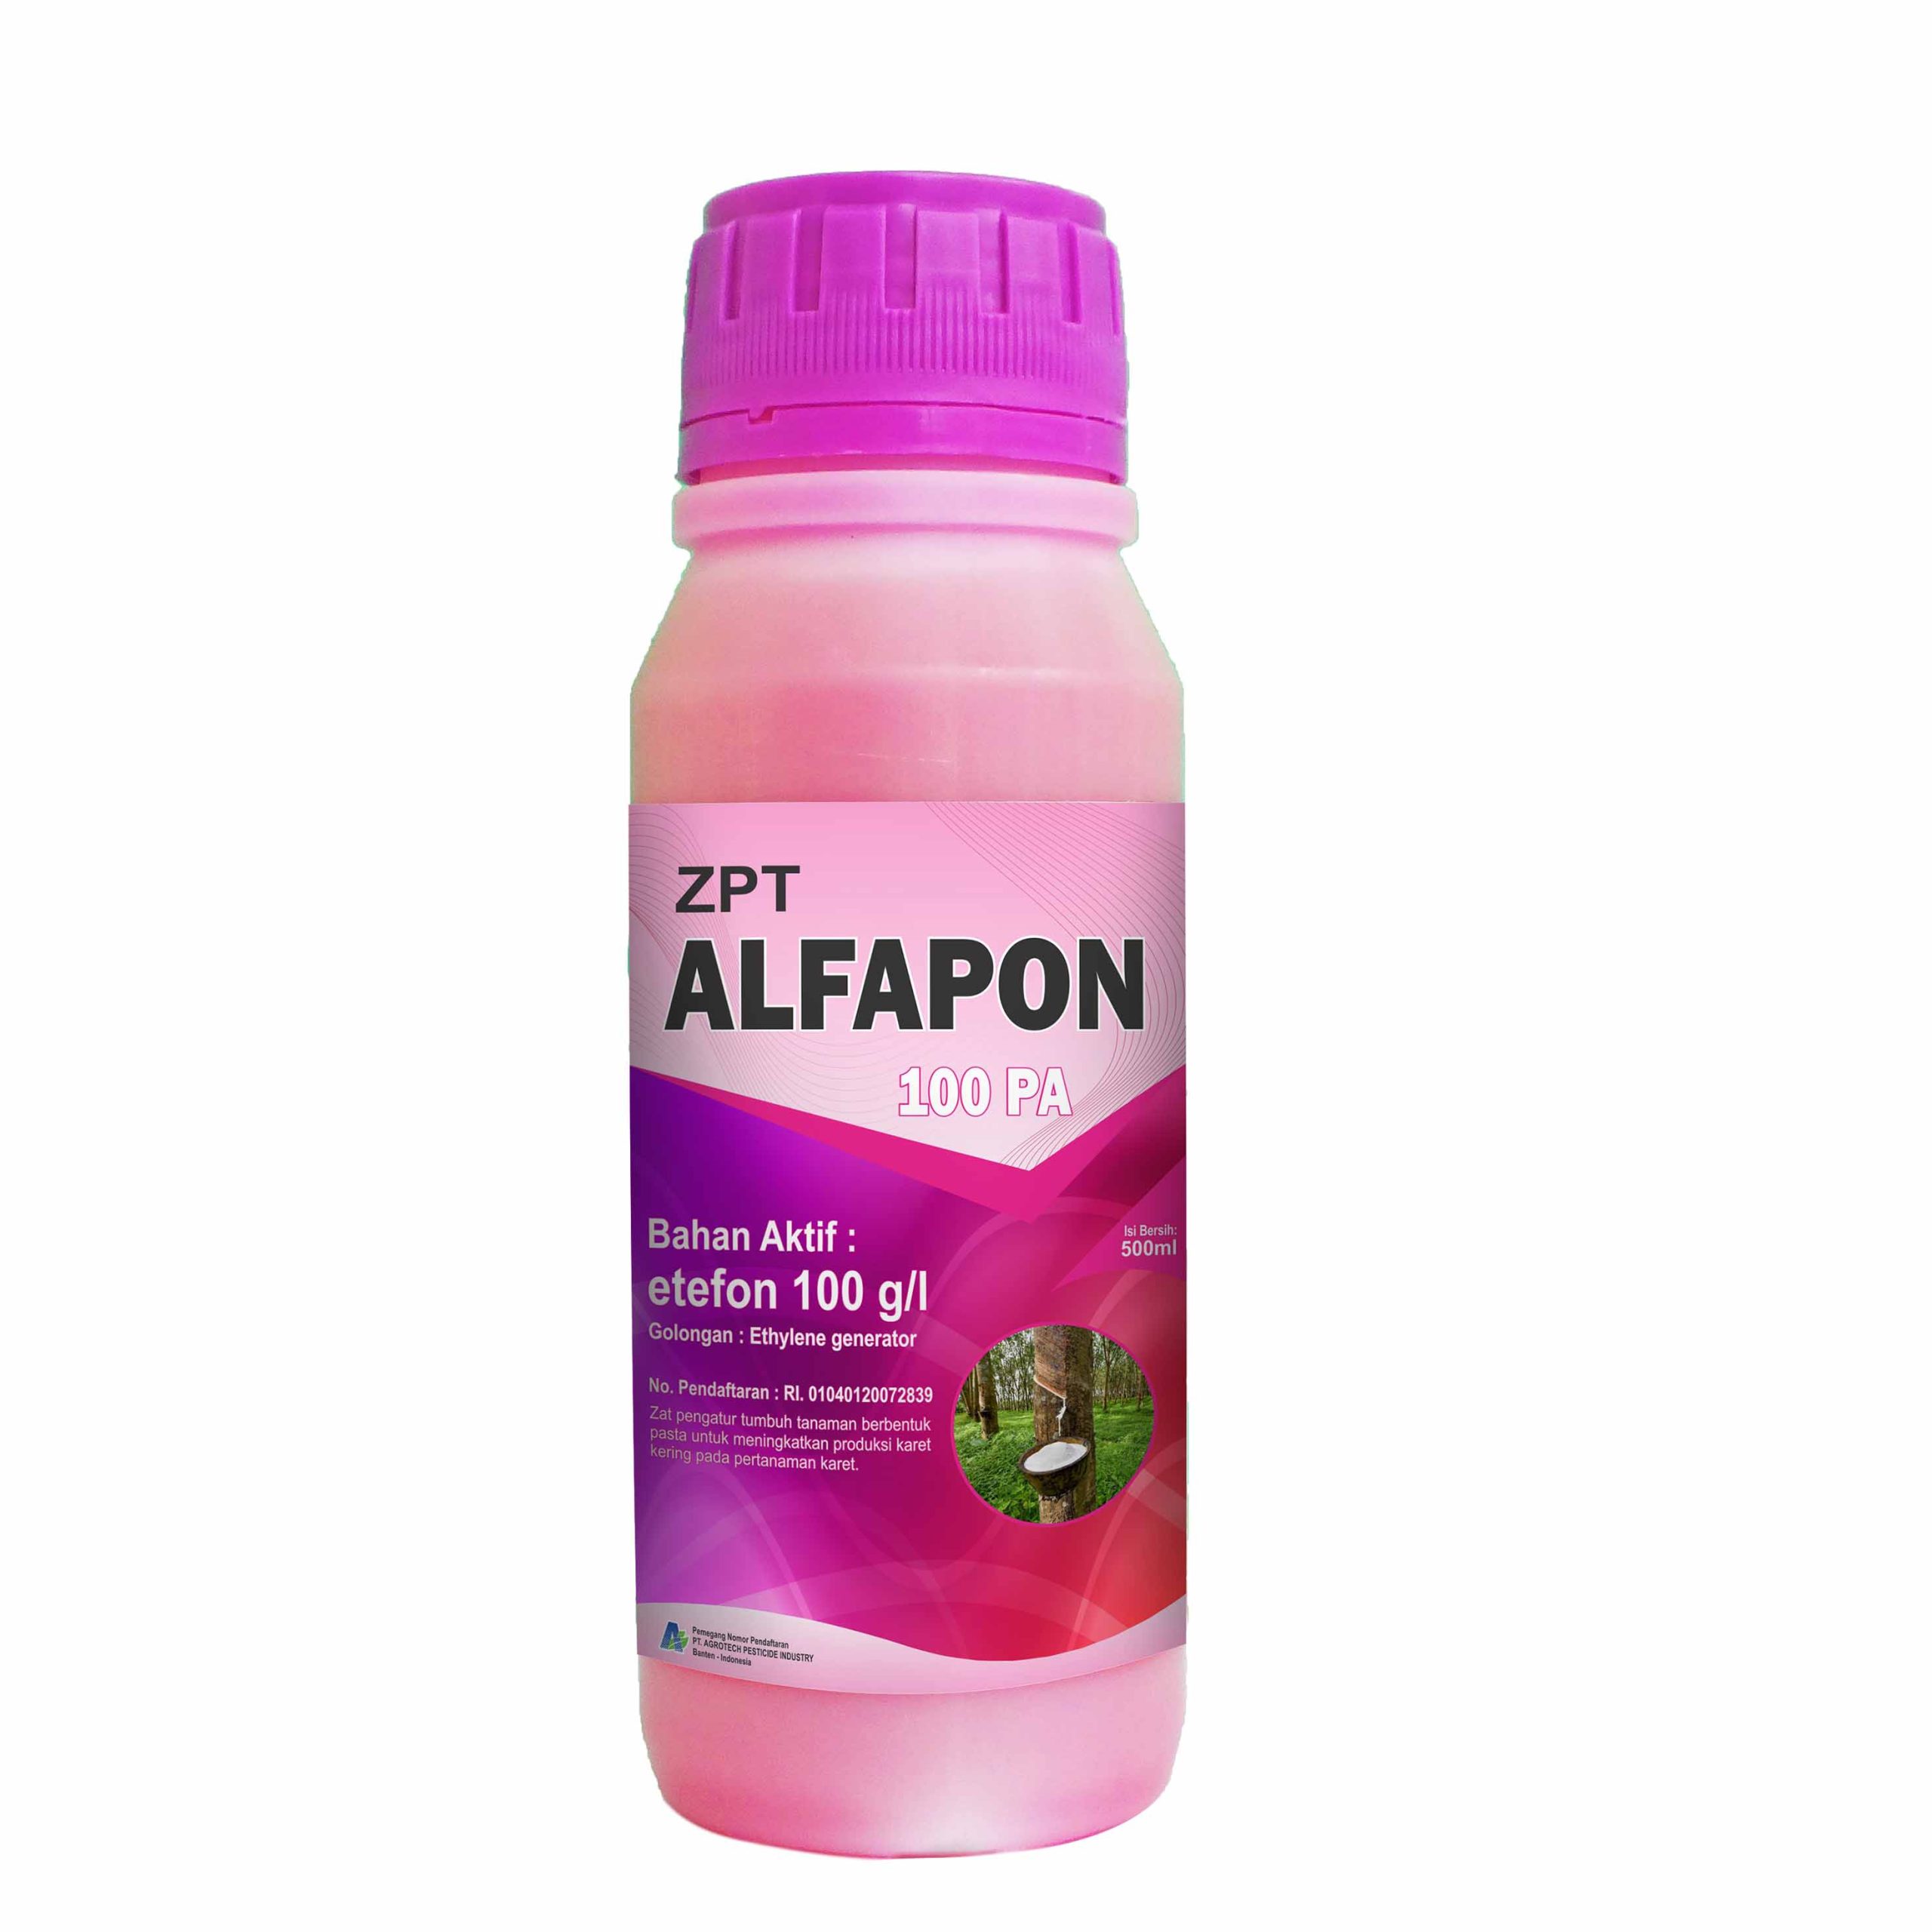 ALFAPON 100 PA